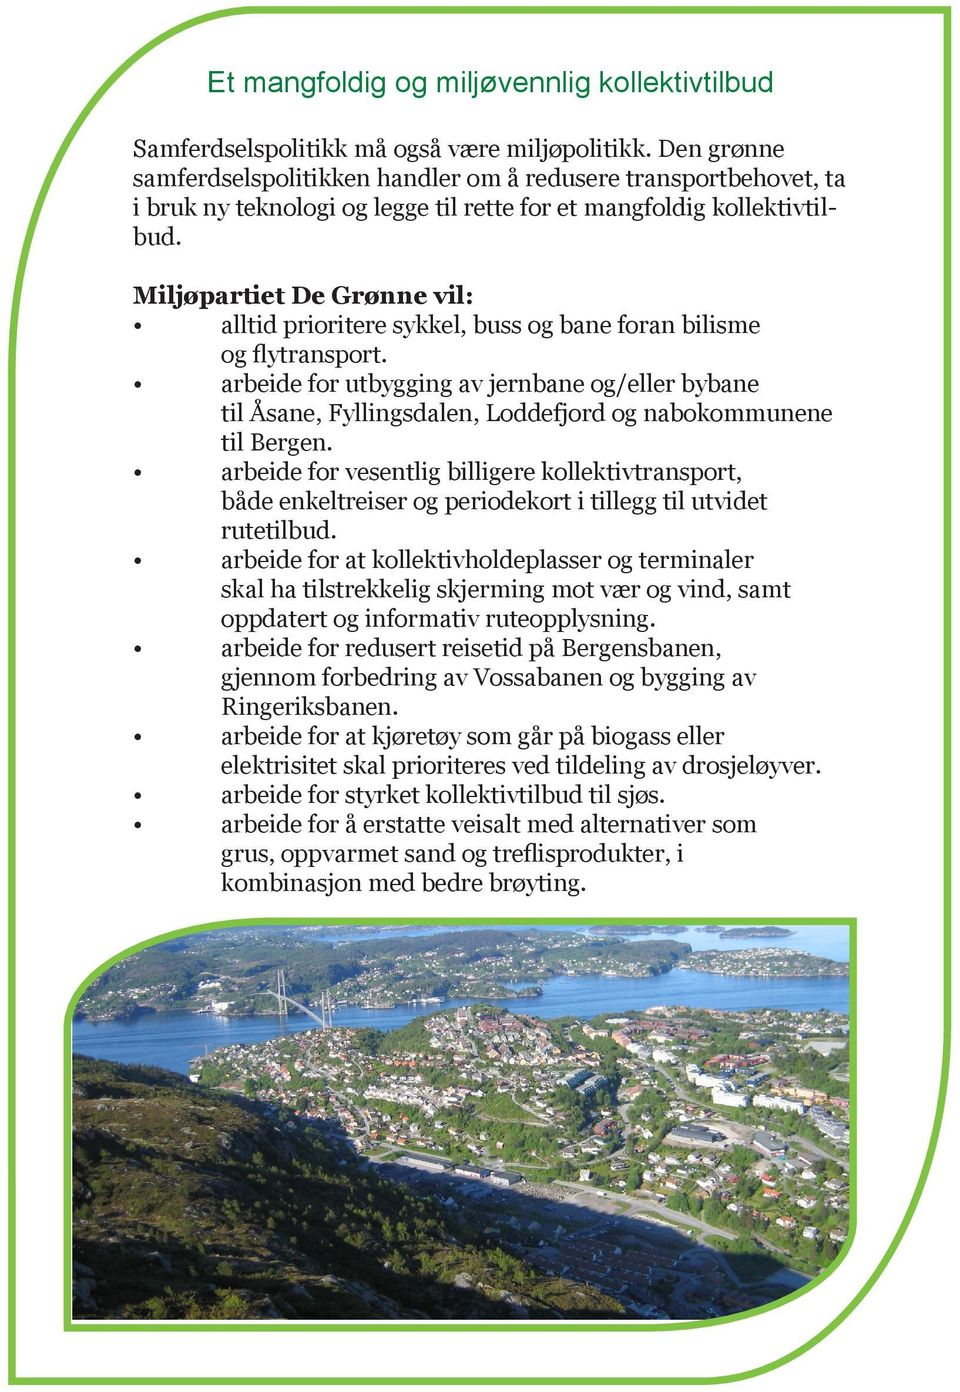 alltid prioritere sykkel, buss og bane foran bilisme og flytransport. arbeide for utbygging av jernbane og/eller bybane til Åsane, Fyllingsdalen, Loddefjord og nabokommunene til Bergen.